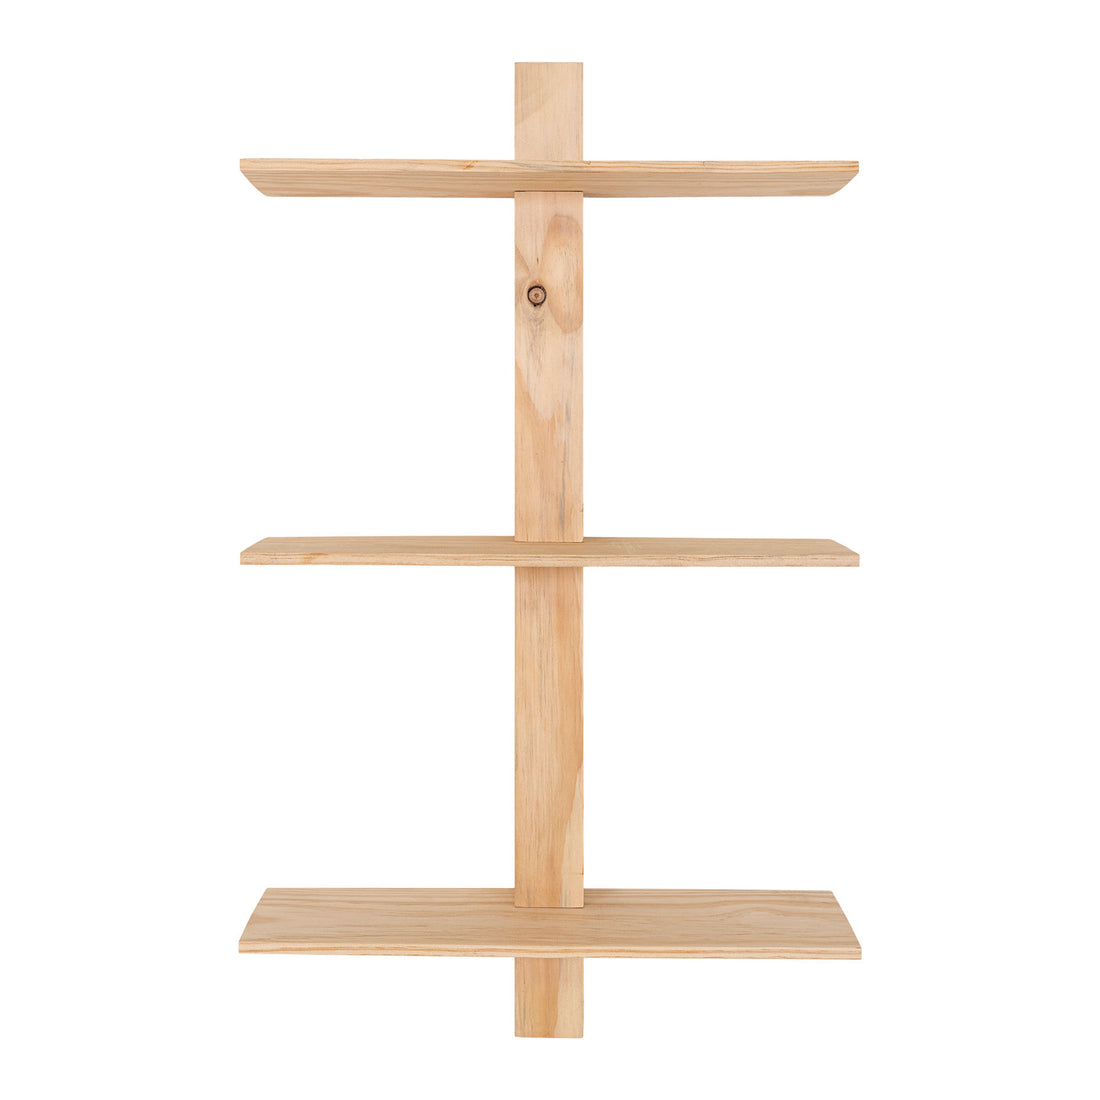 Prateleira Almelo - prateleira de parede com 3 prateleiras em madeira natural 21x55x72 cm - 1 - PCS